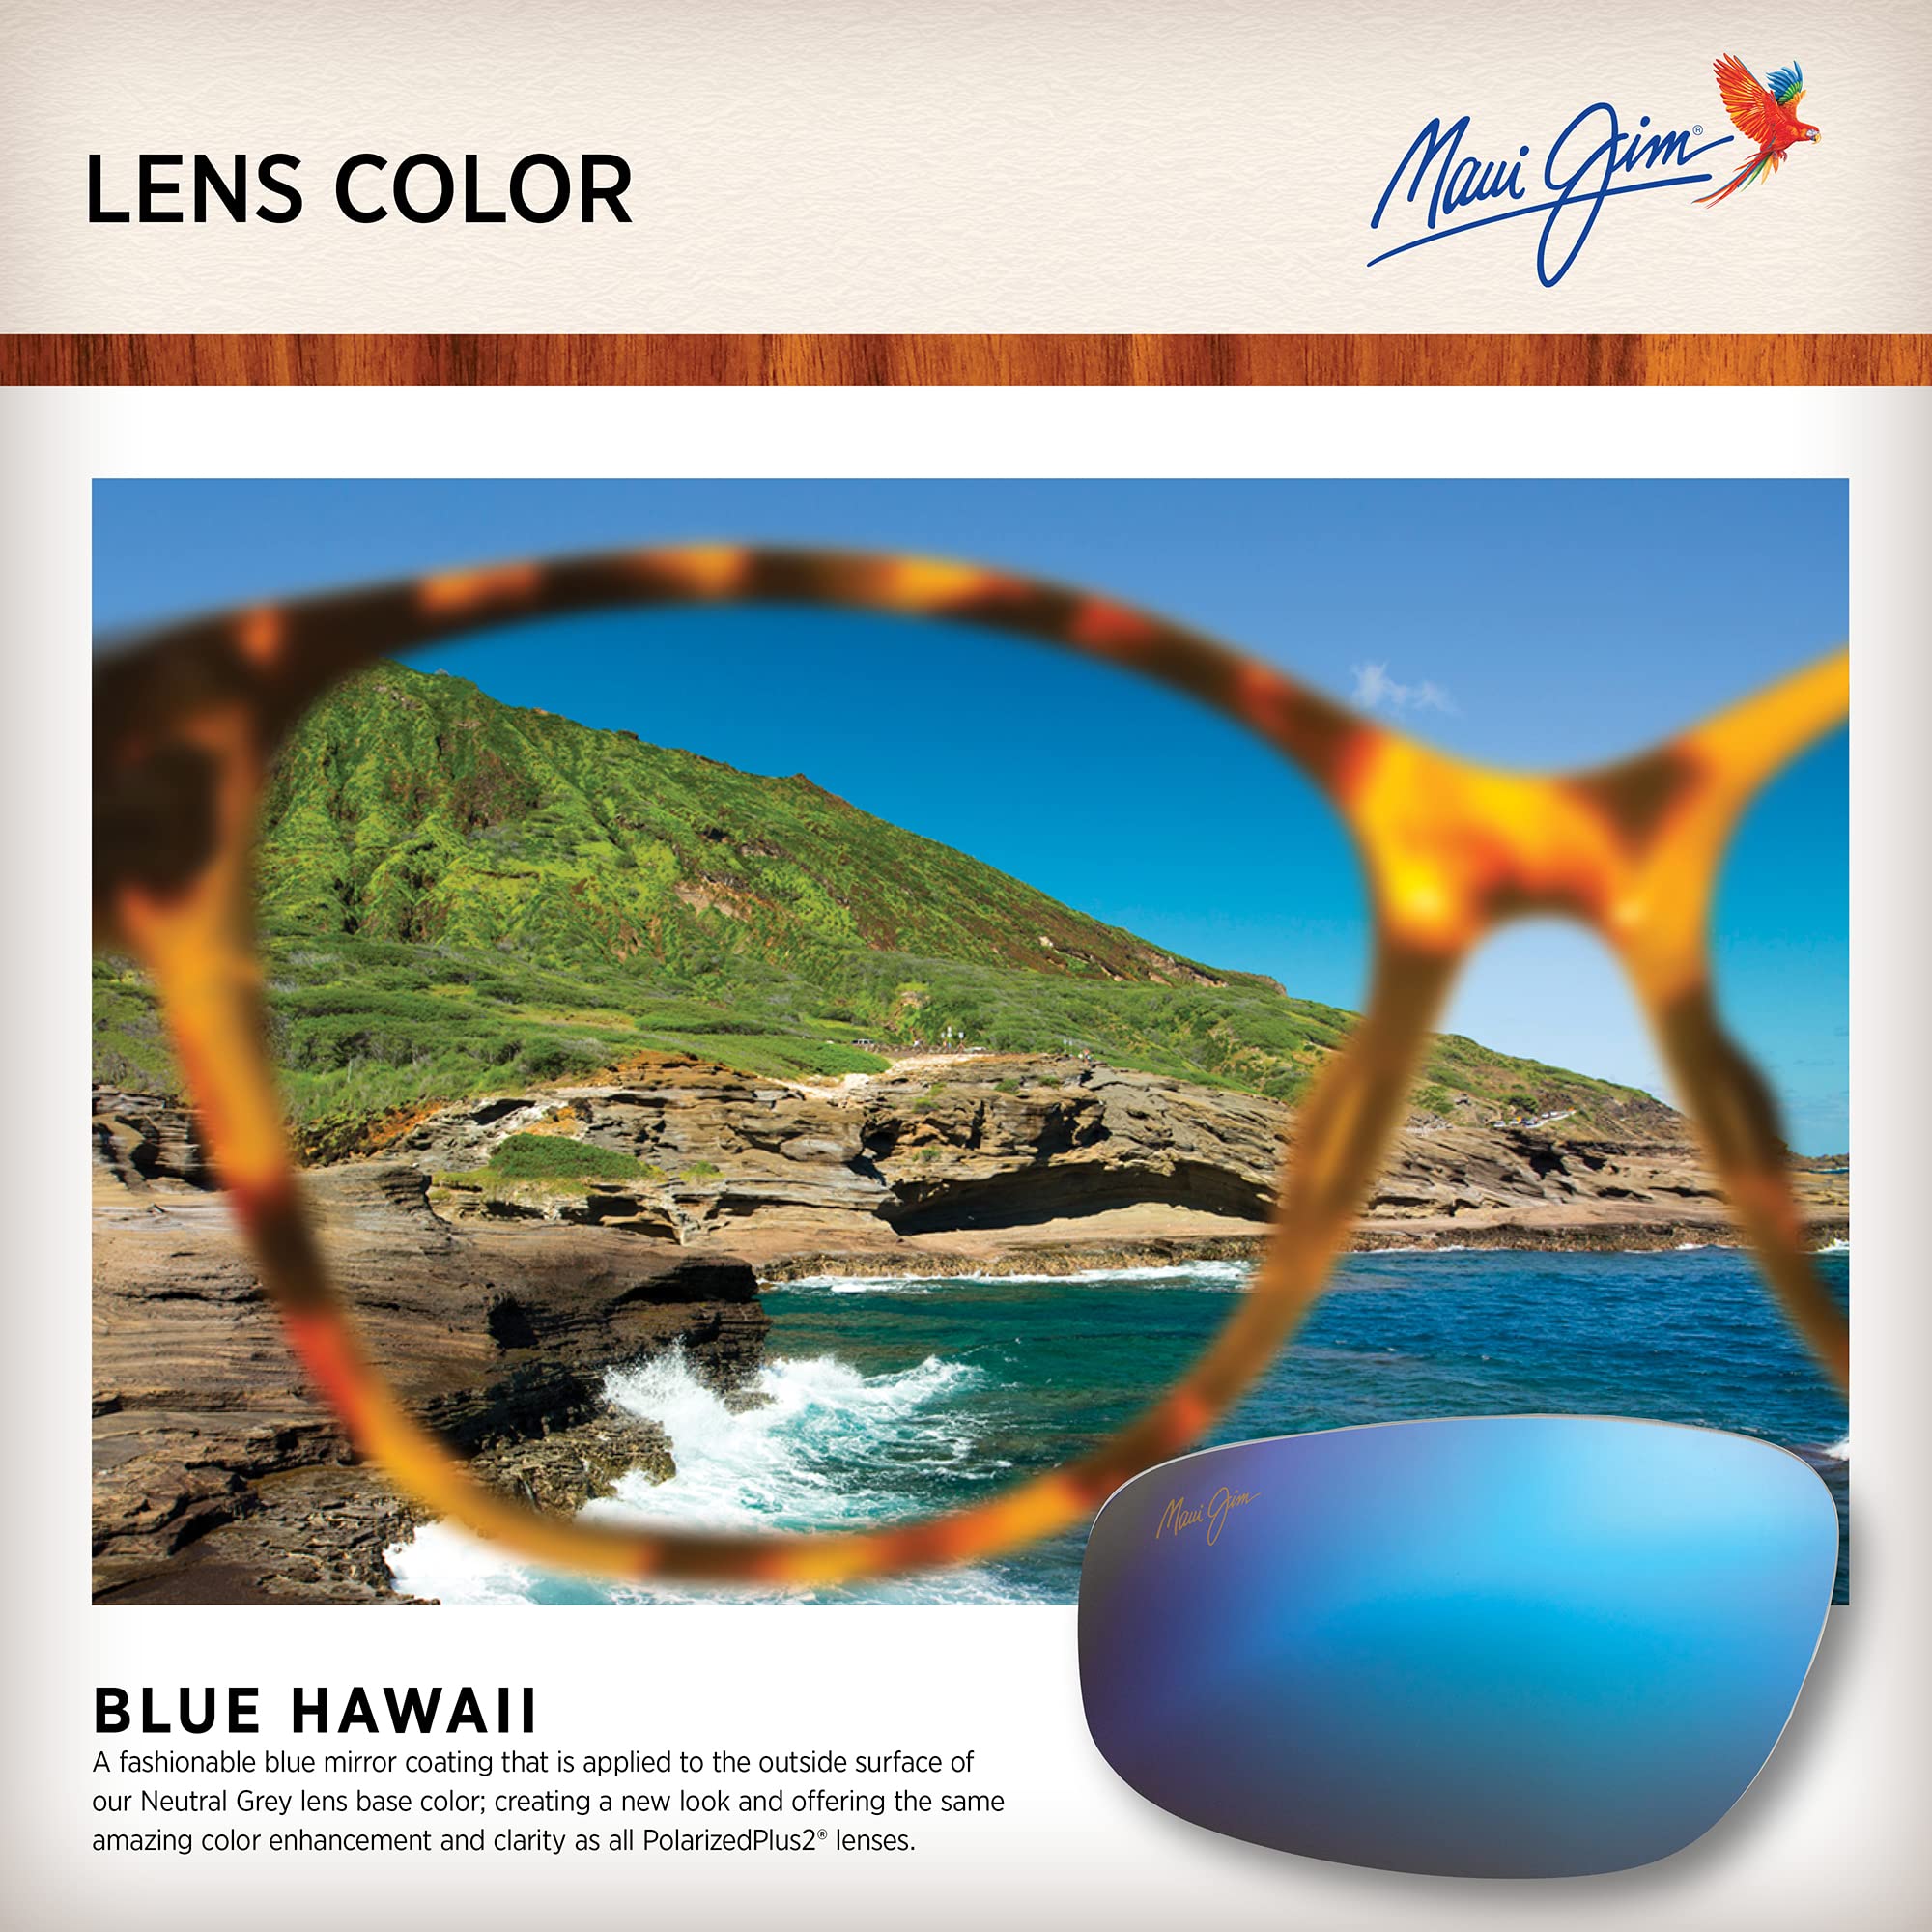 Maui Jim Men's Pailolo Polarized Rectangular Sunglasses